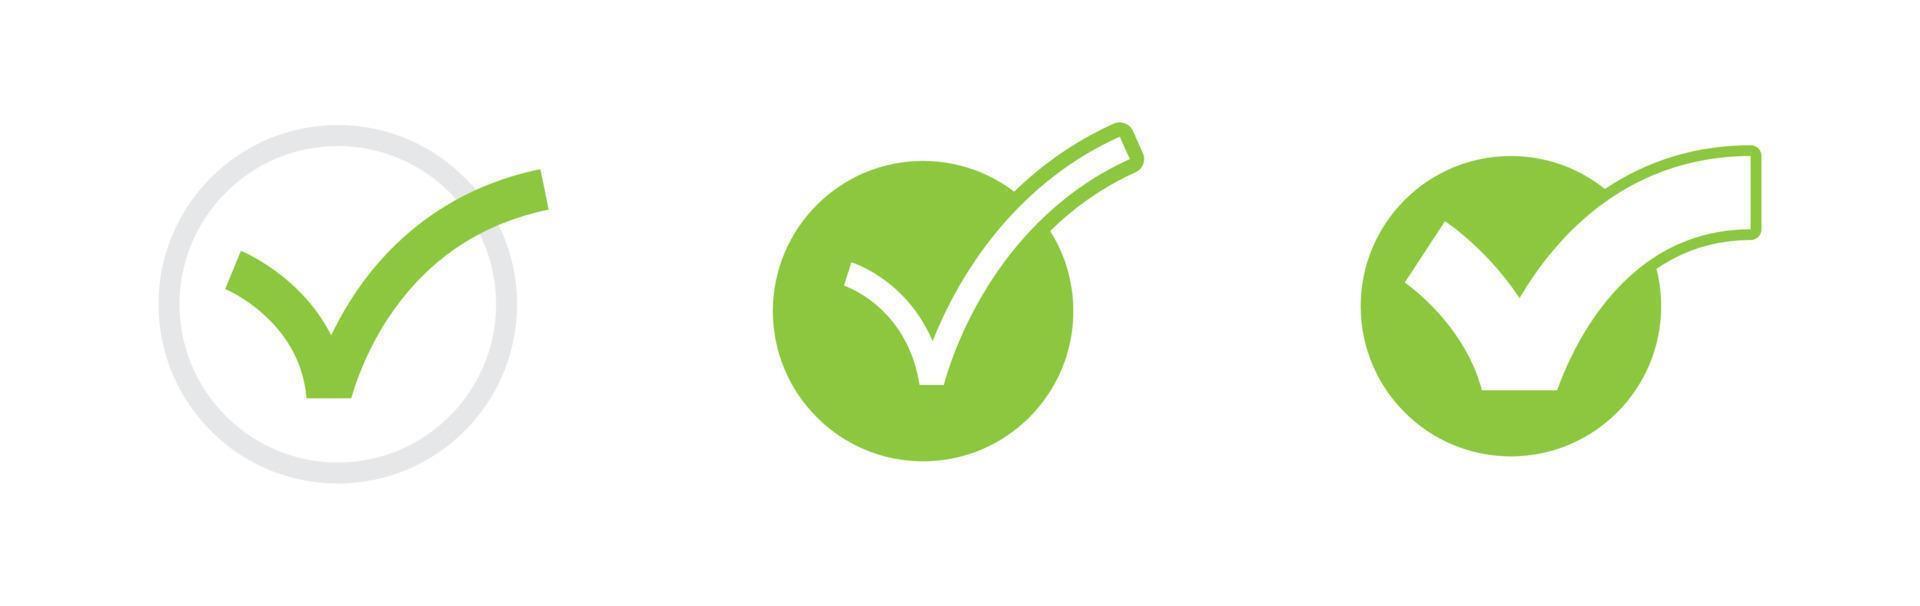 marca de verificación. conjunto de iconos de aprobación de marca verde. vector